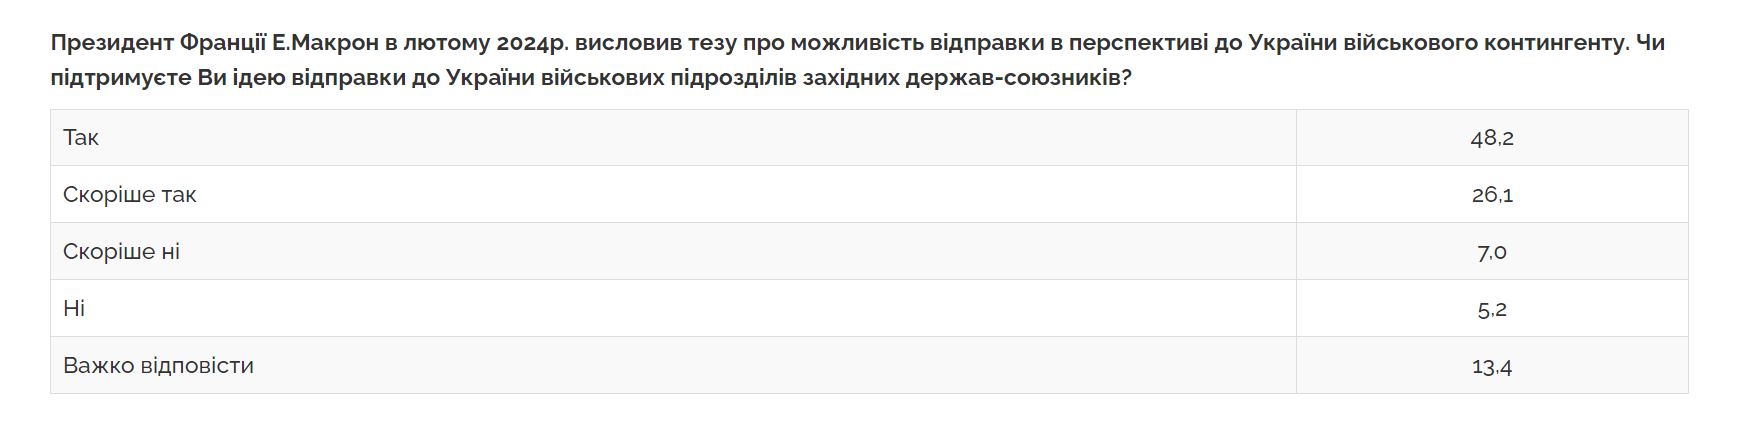 Большинство украинцев поддерживают отправку войск НАТО в Украину, - опрос — фото 1